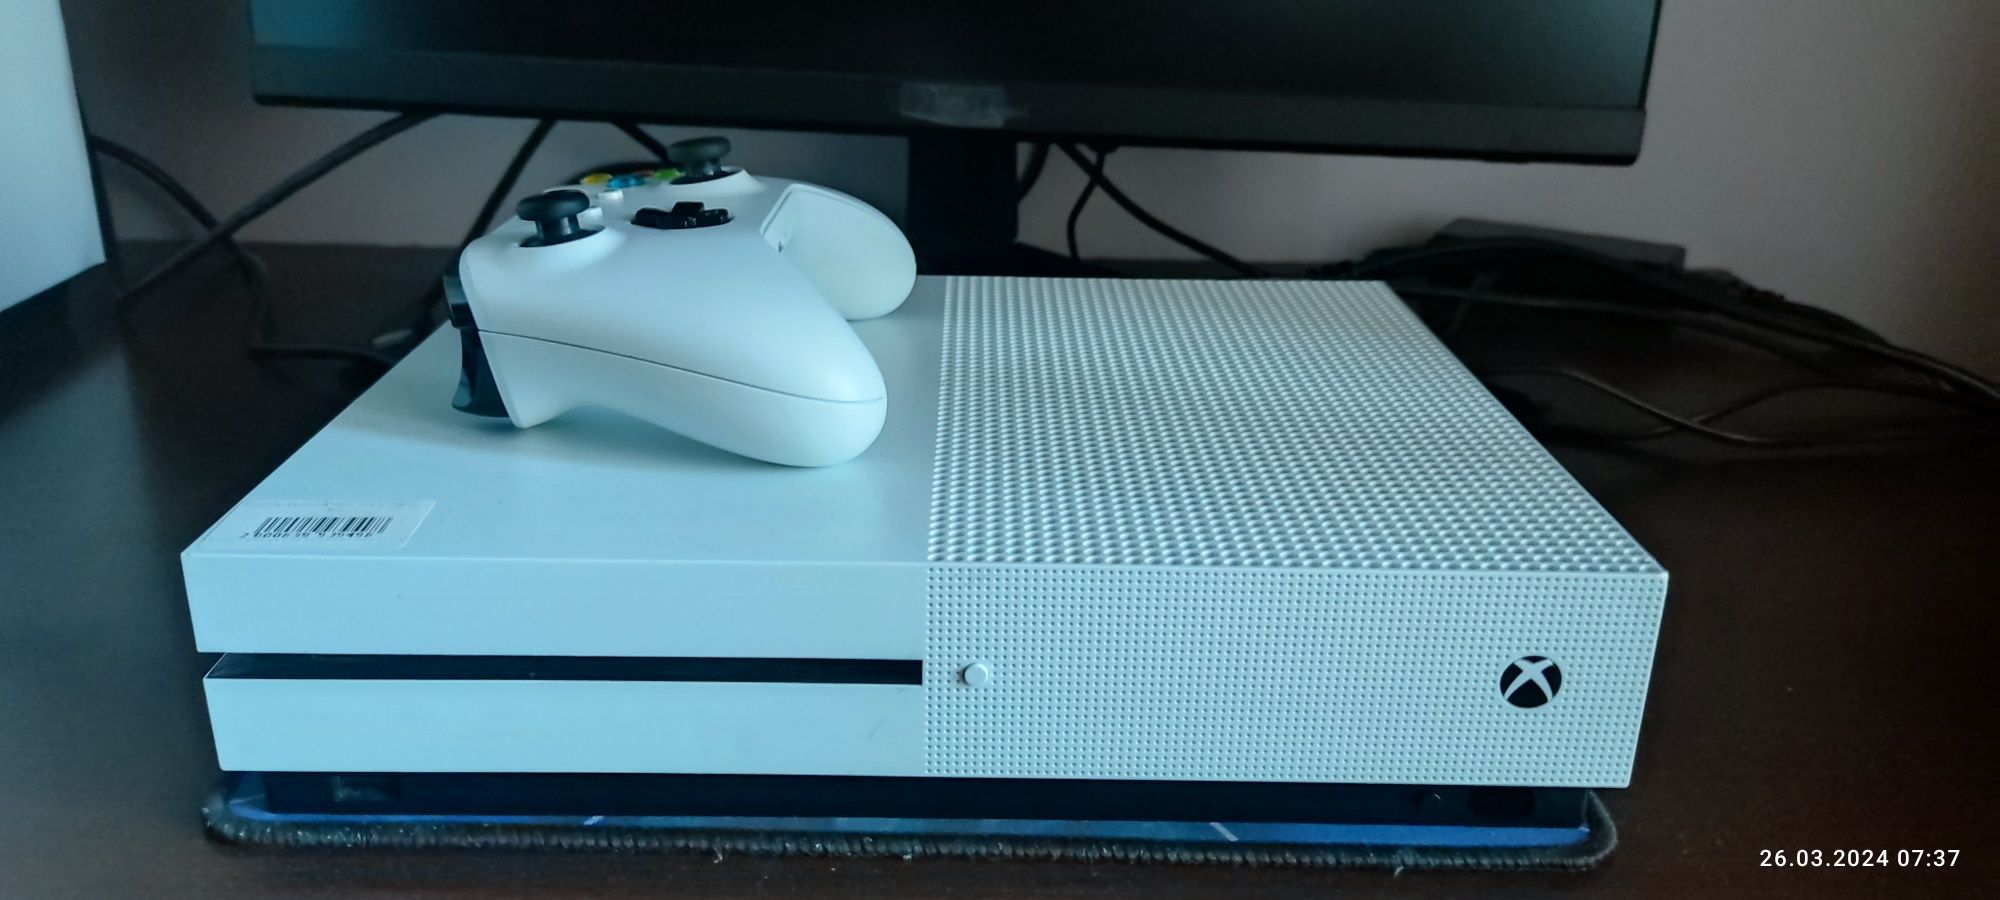 Xbox one s 1tb white